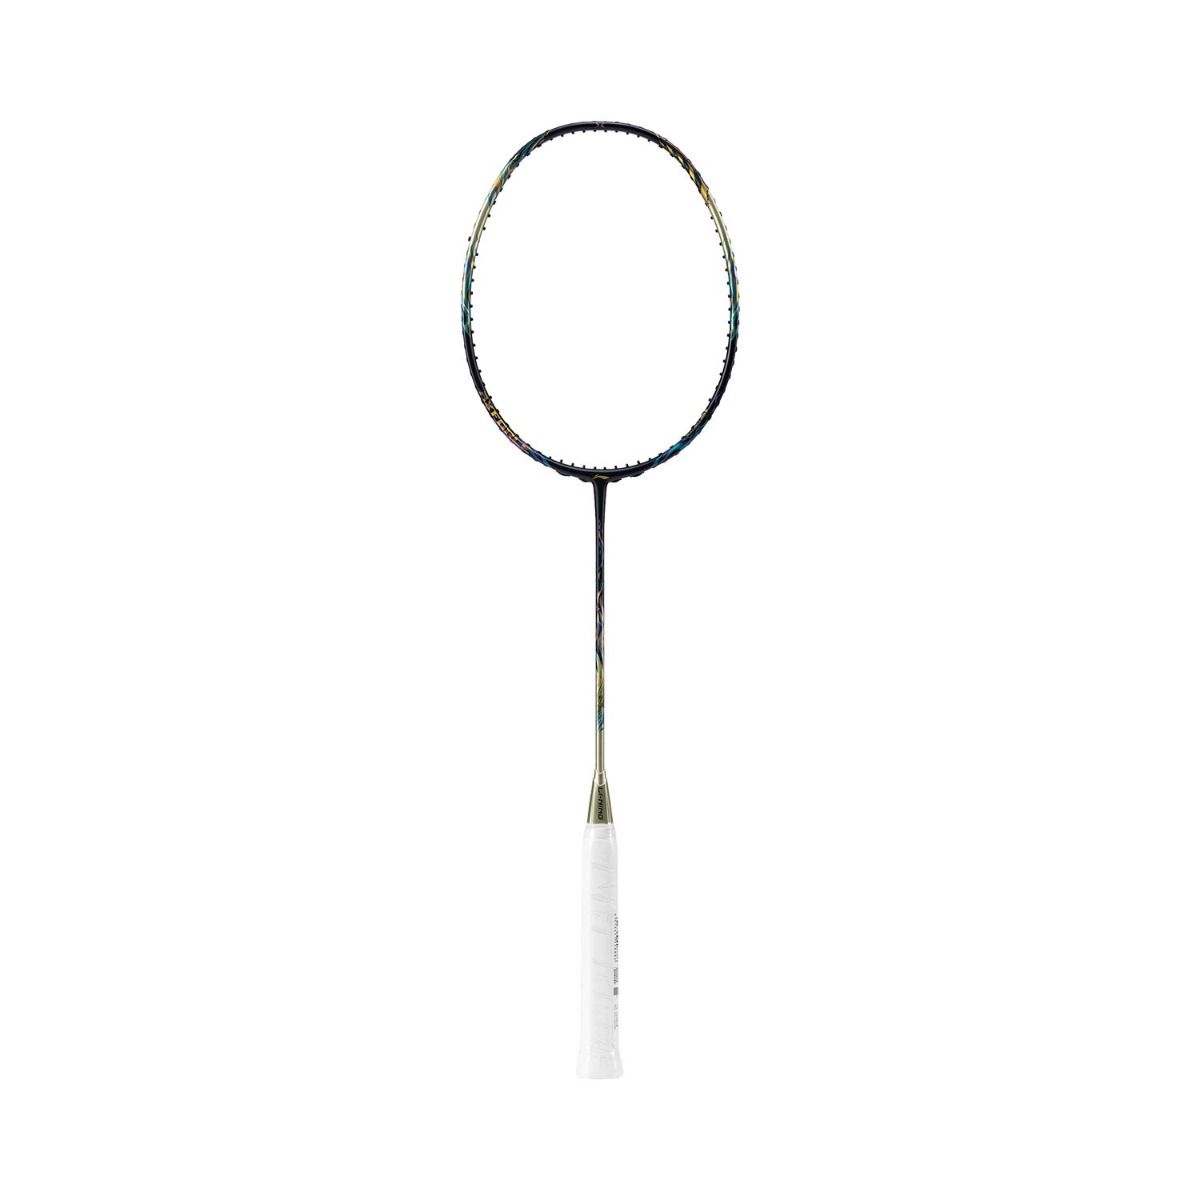 LI-NING AXFORCE 100 Badminton Racket